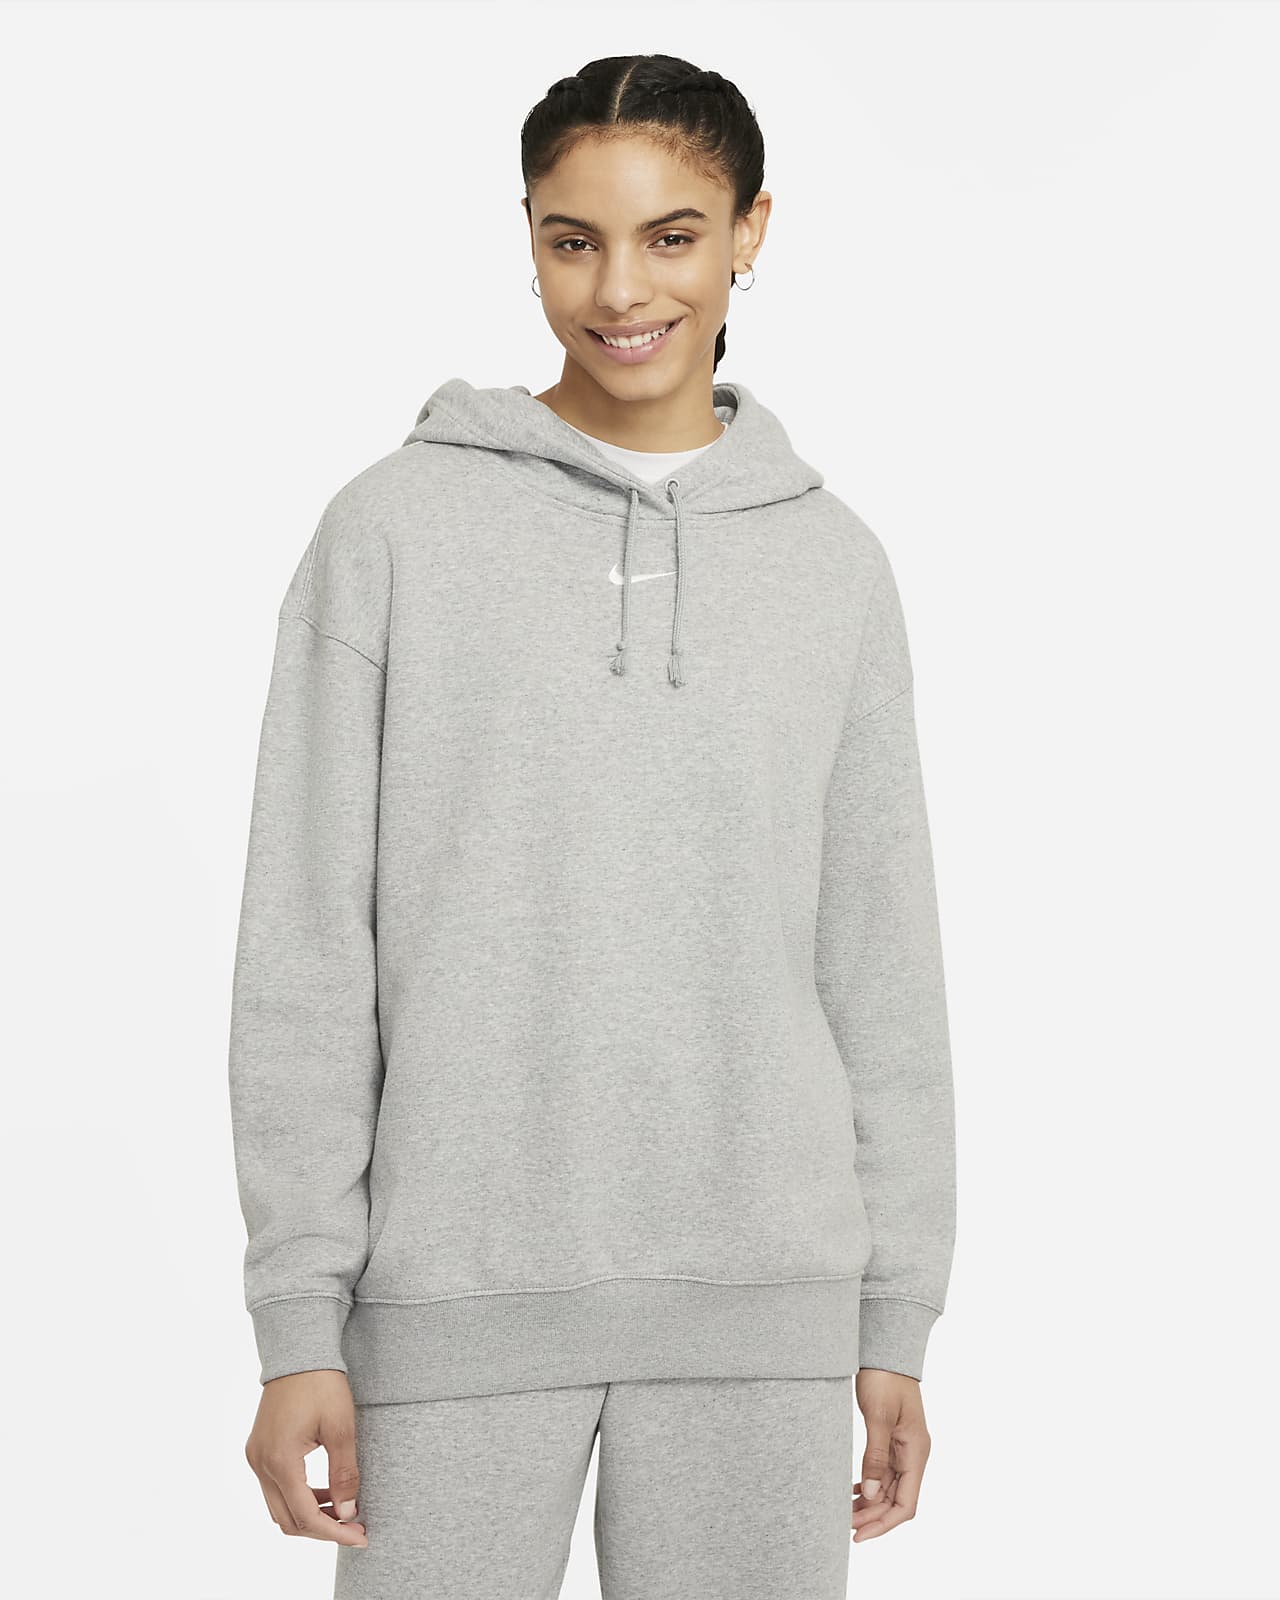 Nike Sportswear Essential Collection Women's Oversized Fleece Hoodie